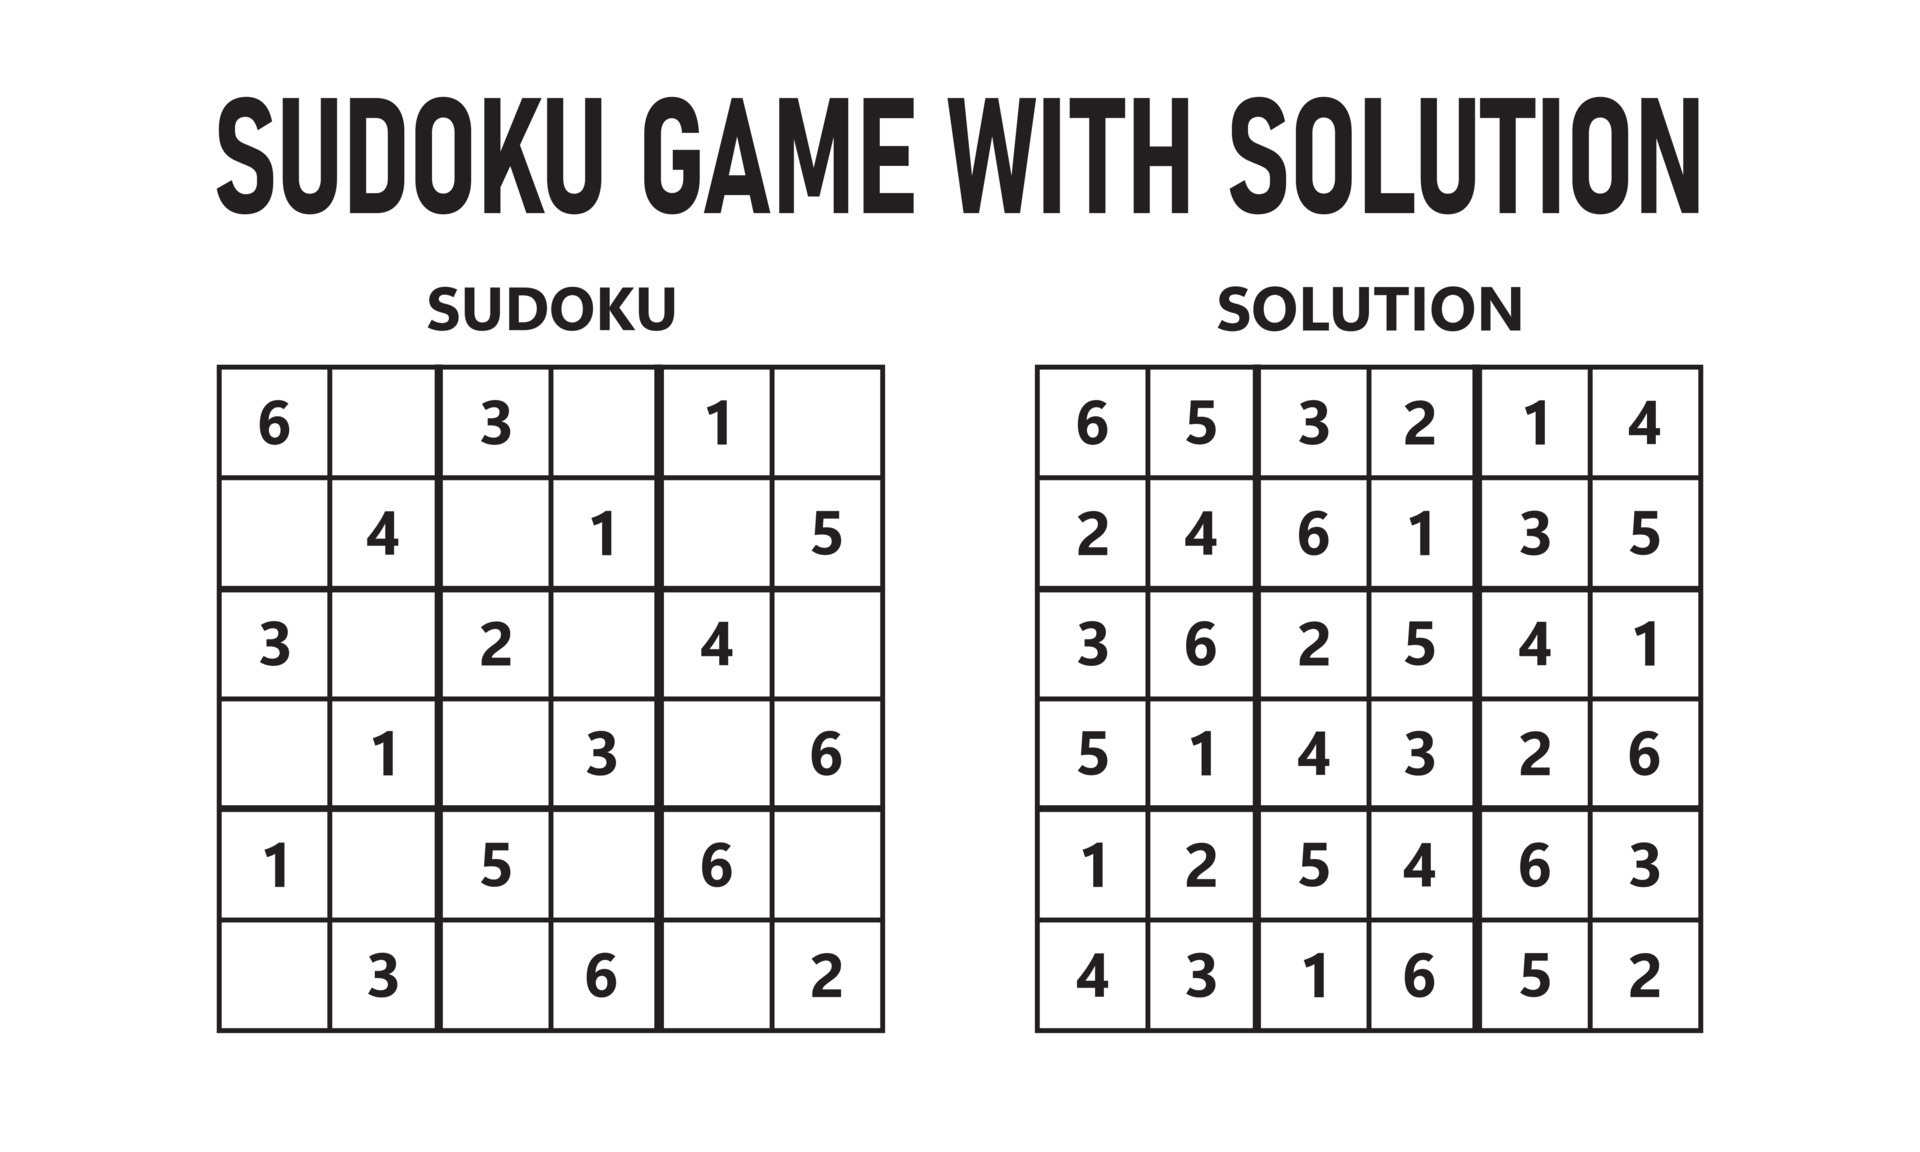 200 Sudoku Puzzles Medio Juego De Lógica Para Adultos Con Soluciones: Para  adictos a los números - Rompecabeza 9x9 Clásico (Spanish Edition)